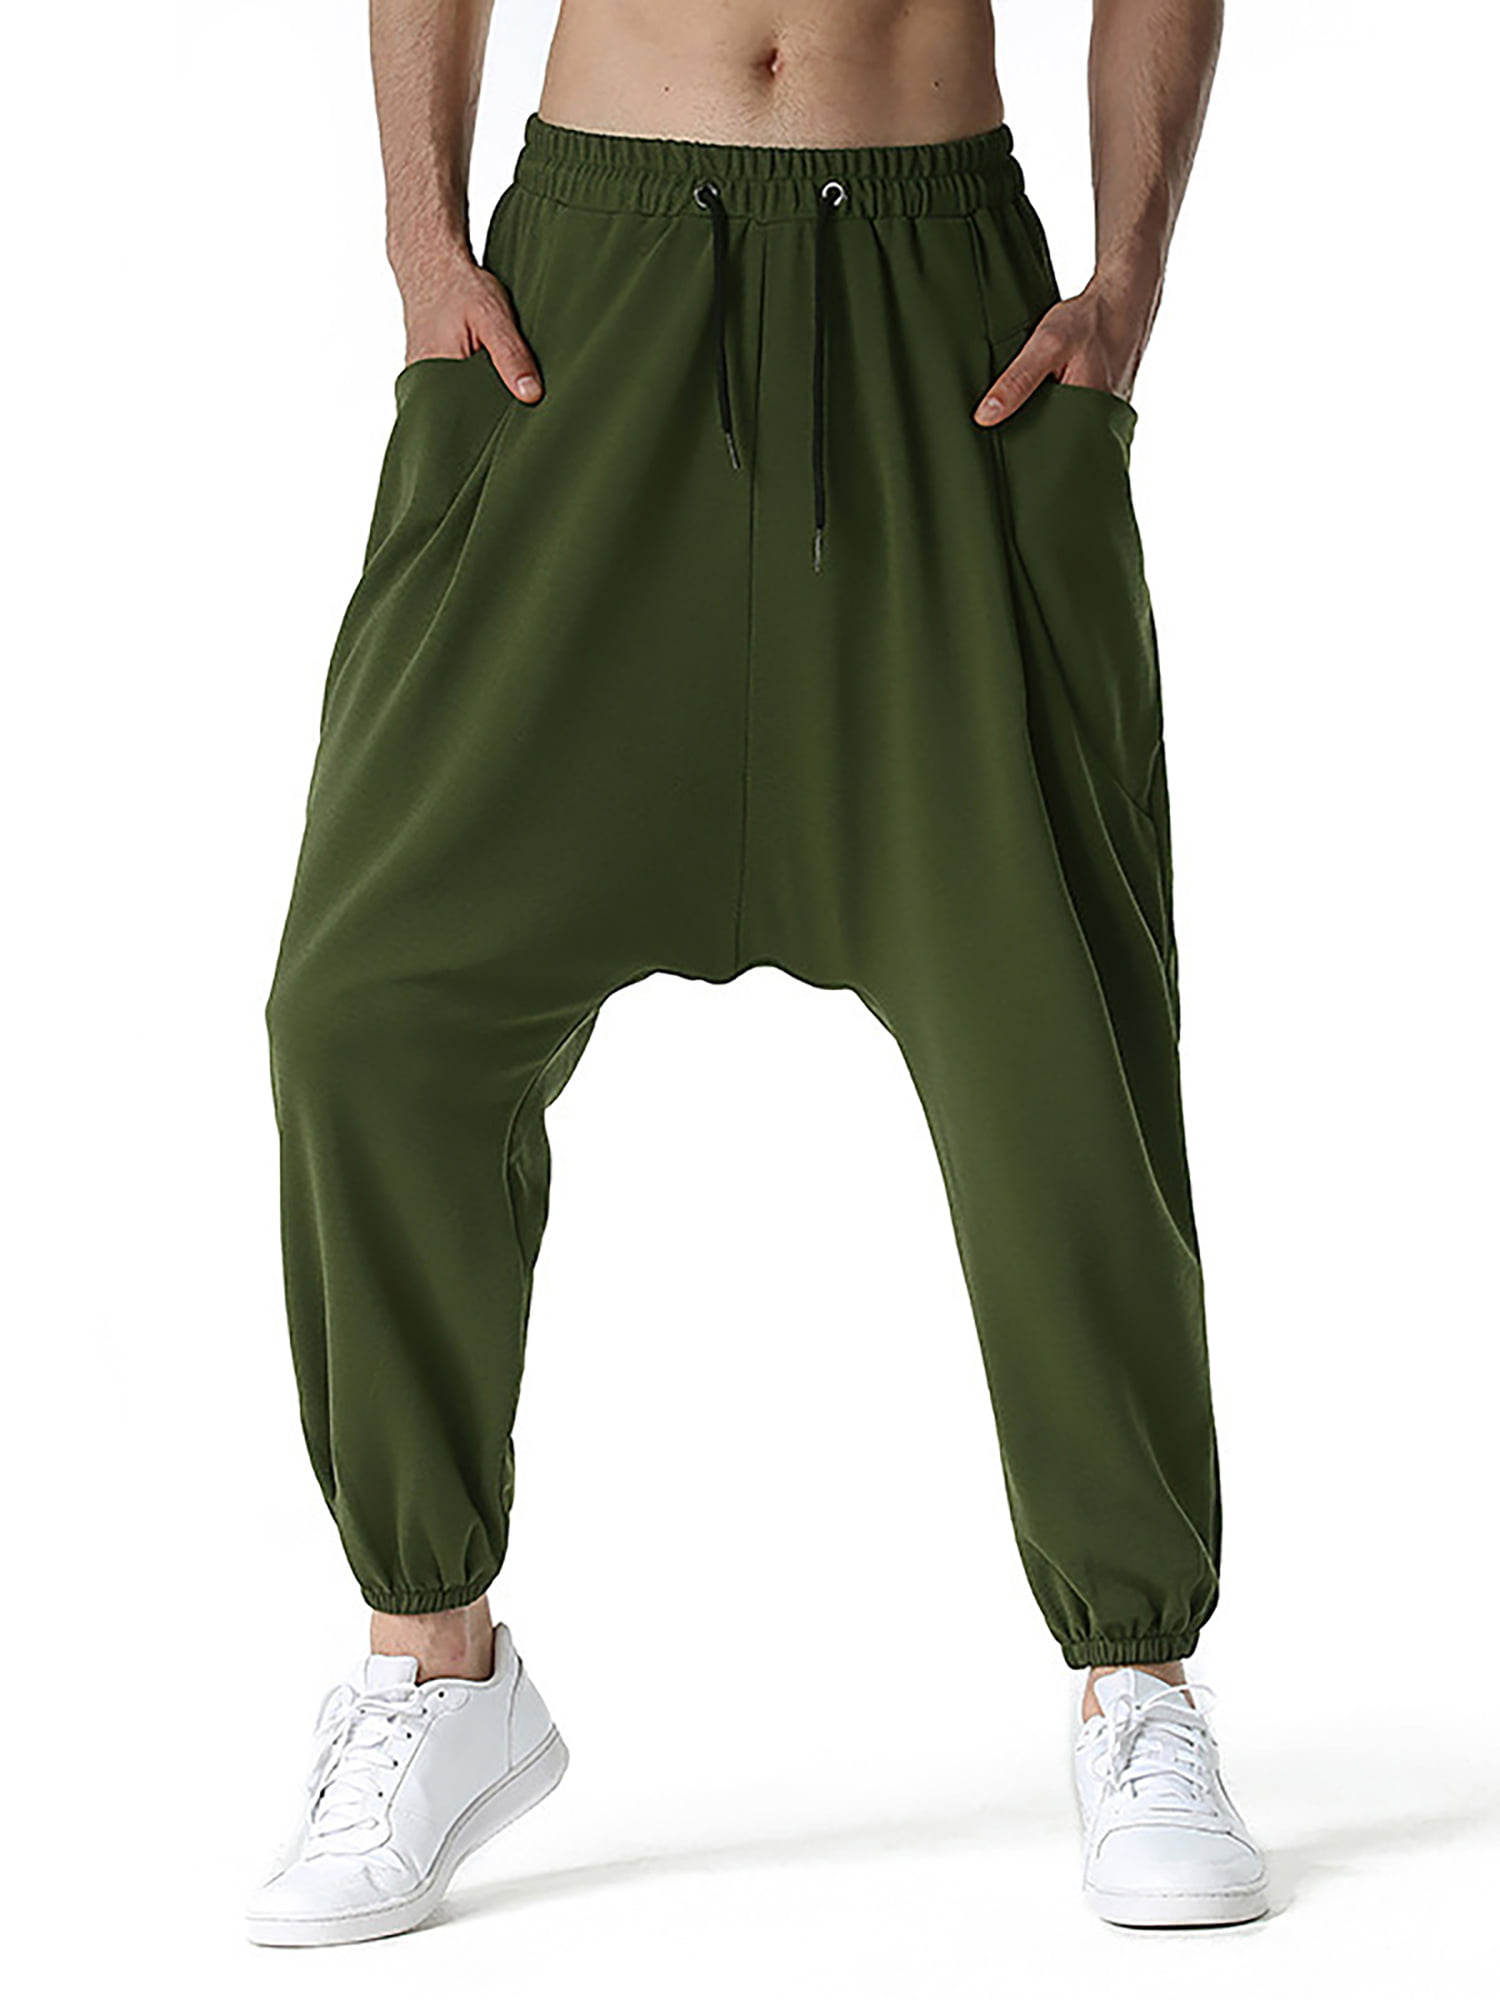 New Genie Aladin Harem Pants Trouser Sleepwear Child boy girl Baby PGB8